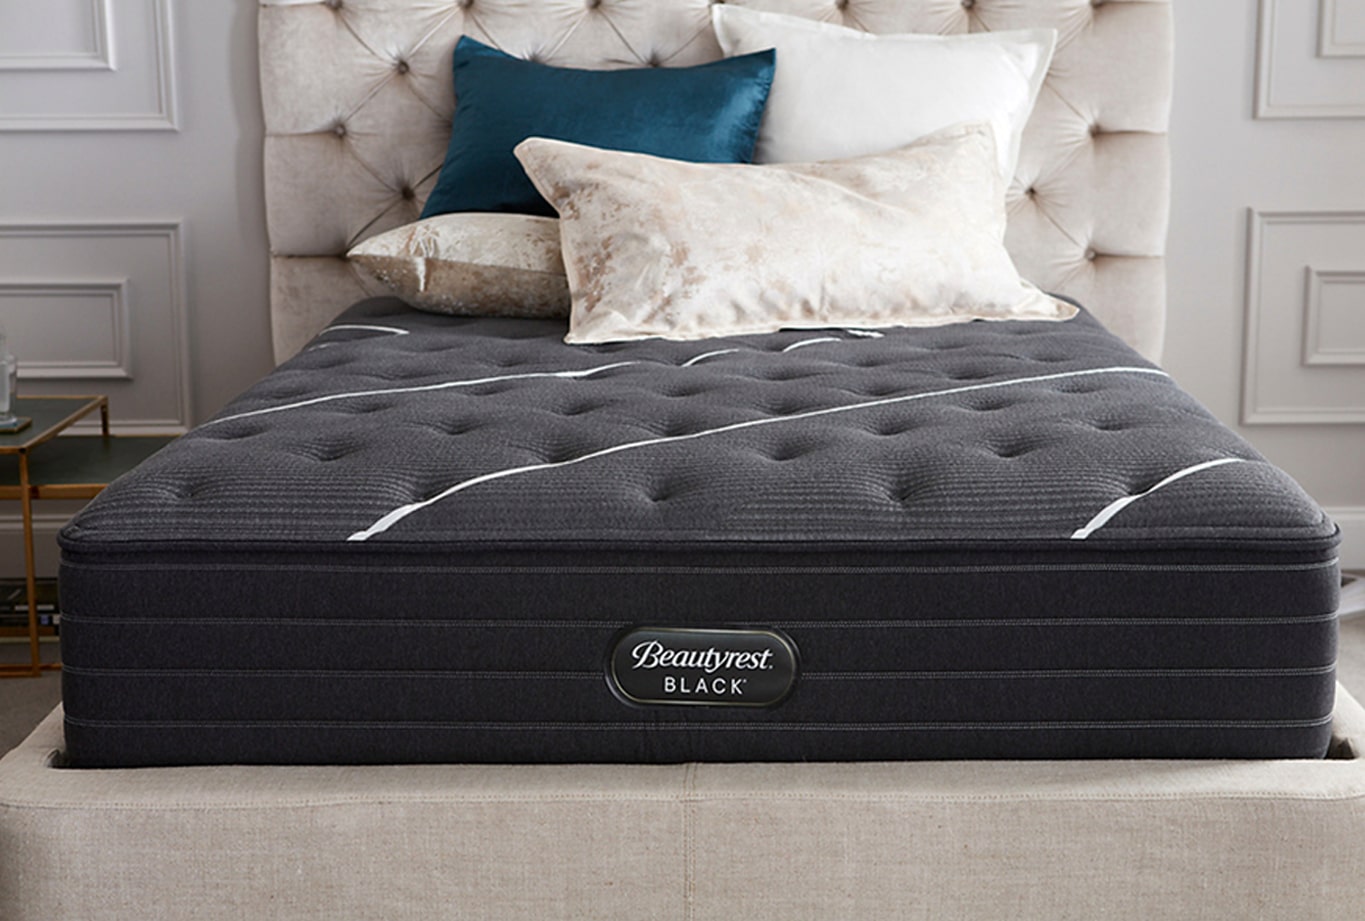 beautyrest black lydia queen mattress